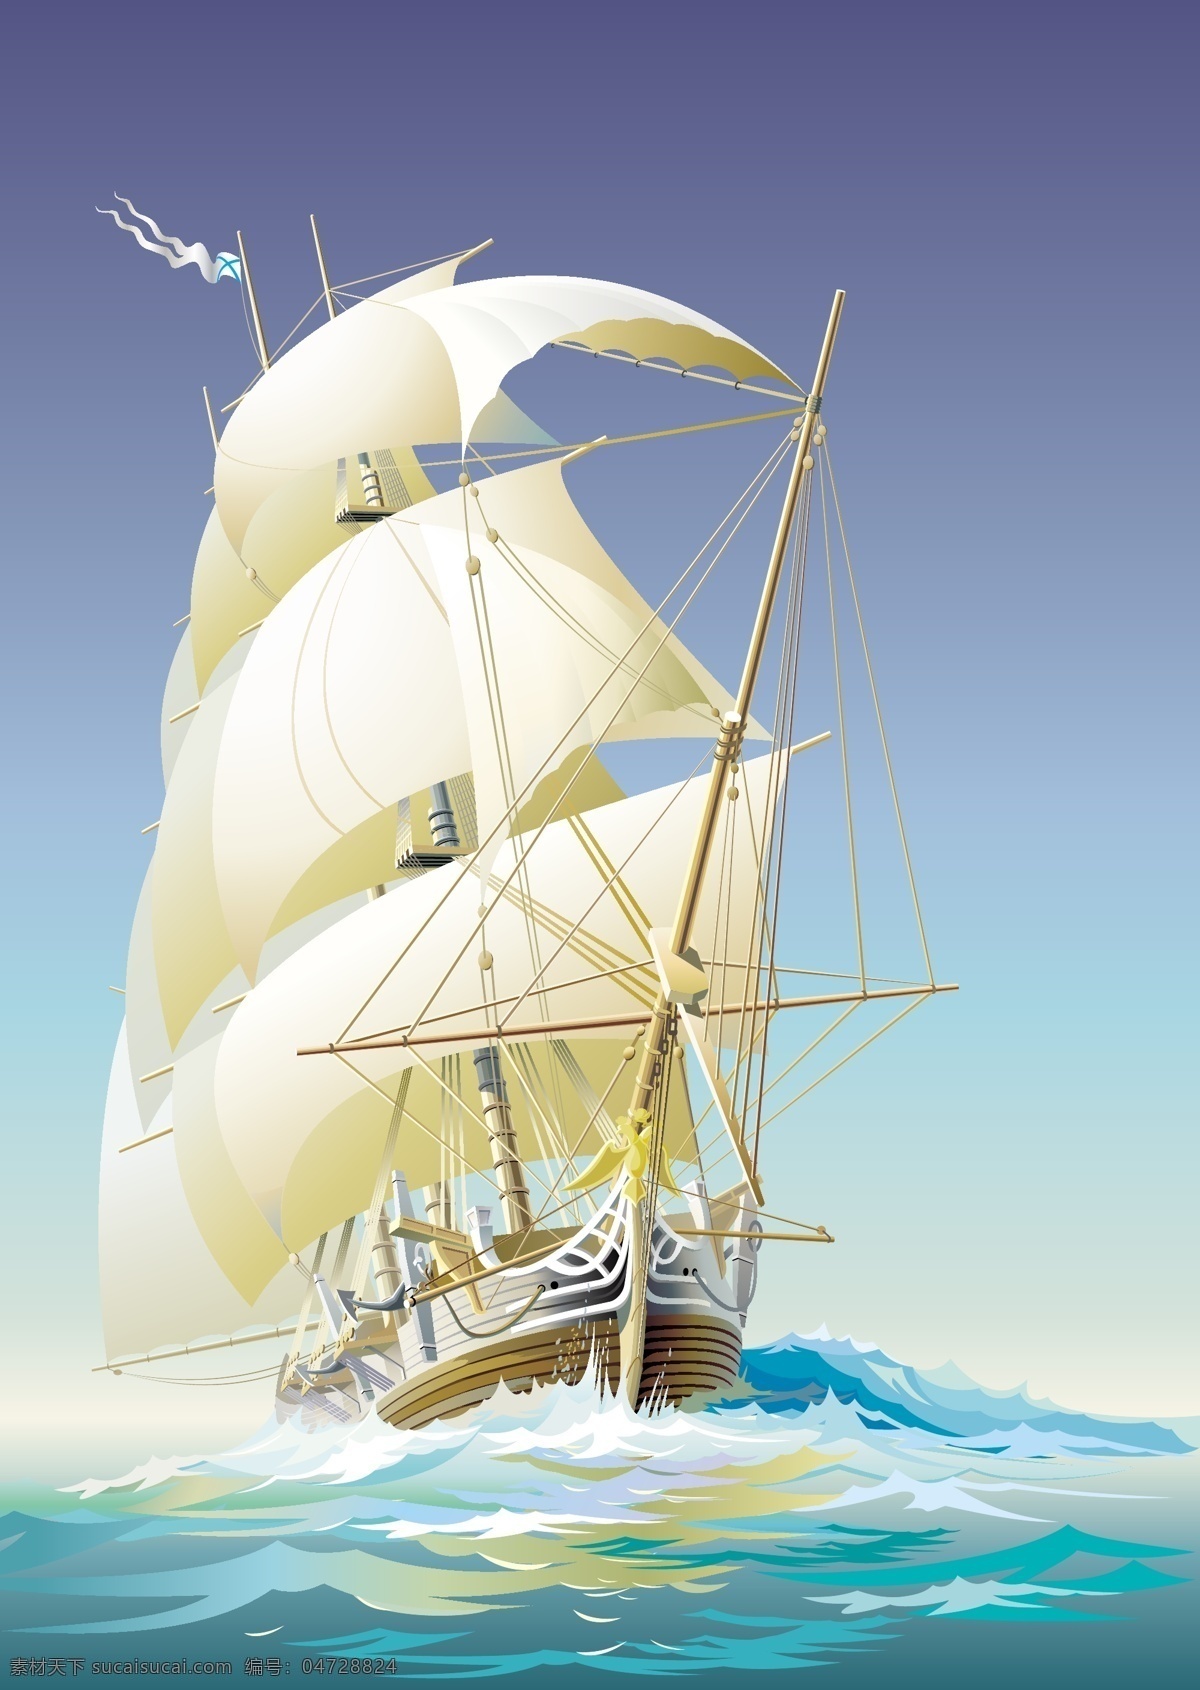 矢量 帆船 船 大海 海浪 蓝天 矢量帆船 矢量图片 白帆远航 其他矢量图